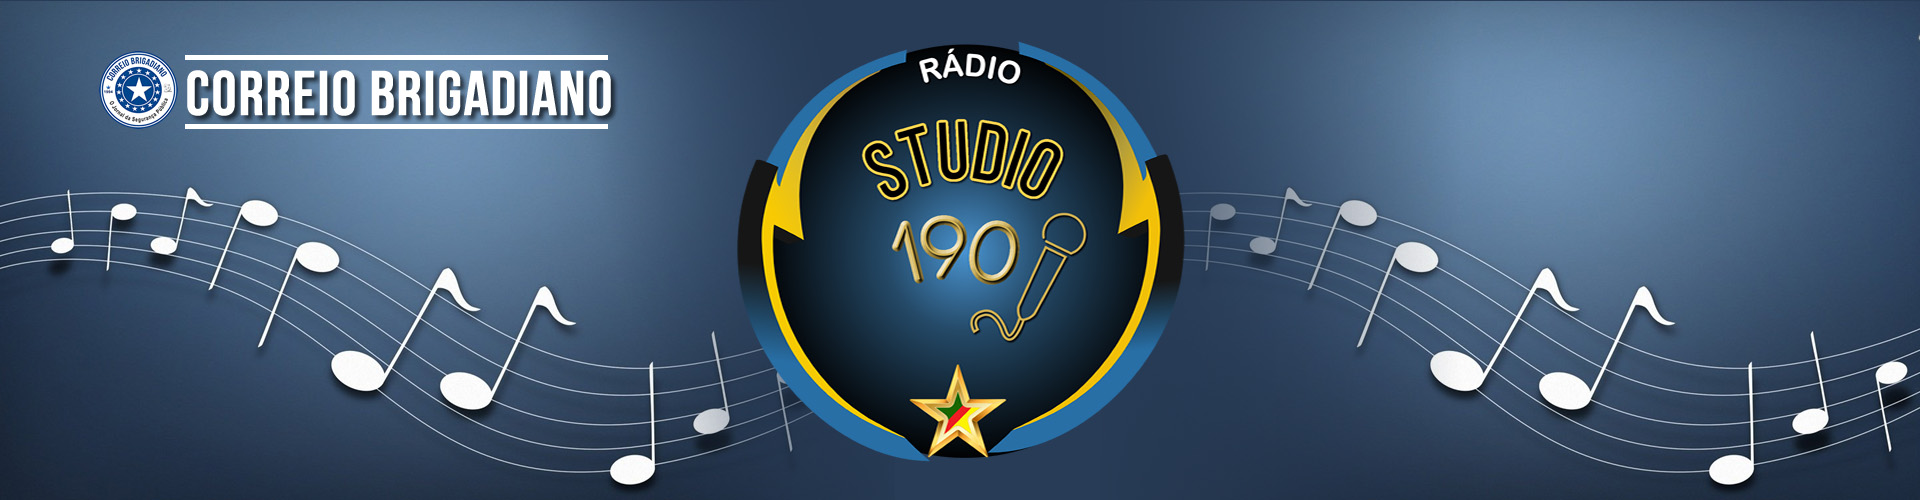 Rádio Studio 190 Porto Alegre